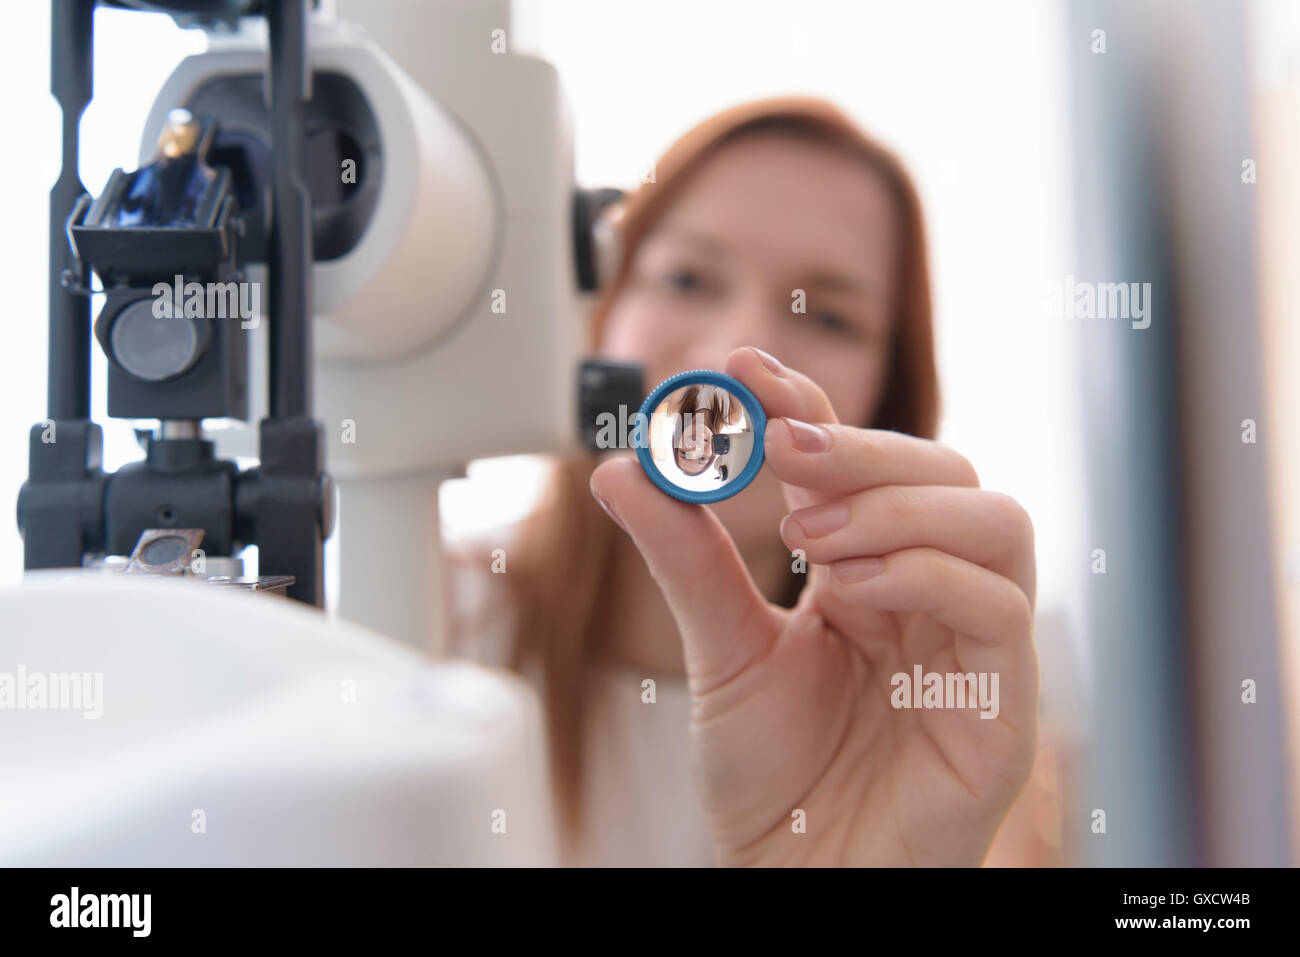 Lente óptico mantiene a ojos del paciente a pequeñas empresas opticas Foto de stock